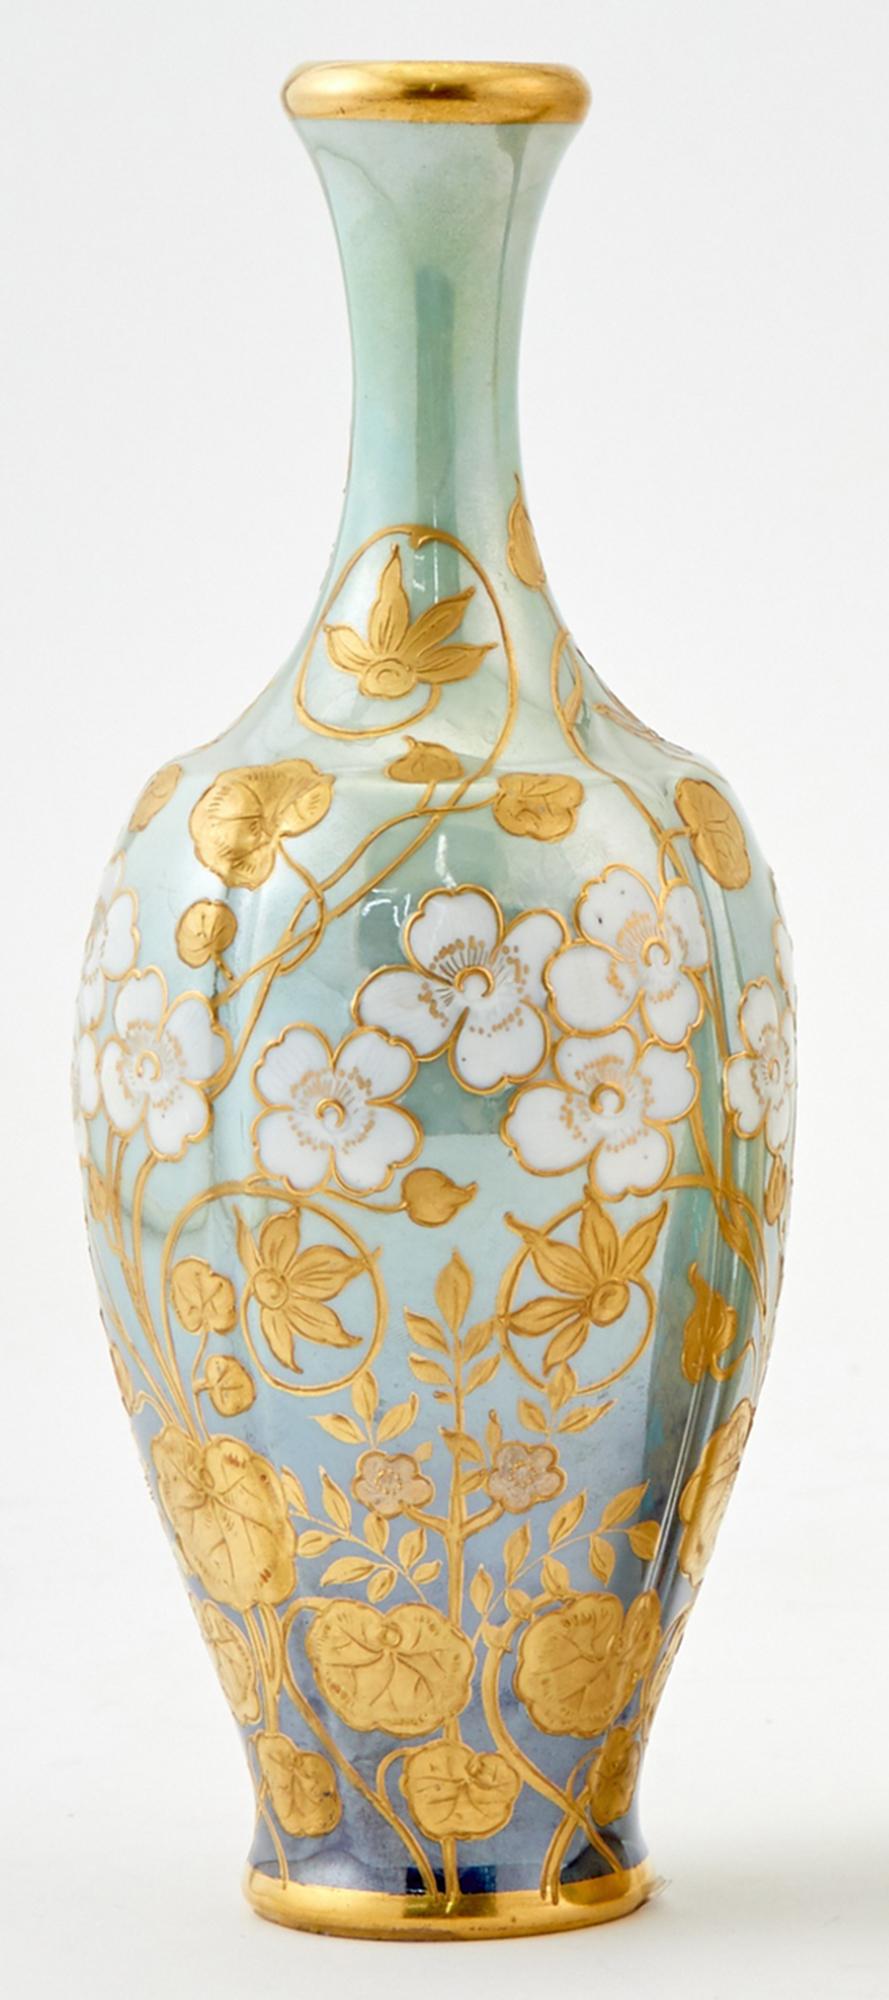 19th Century  Art Nouveau Royal Vienna Hand-Painted Porcelain Portrait Cabinet Vase